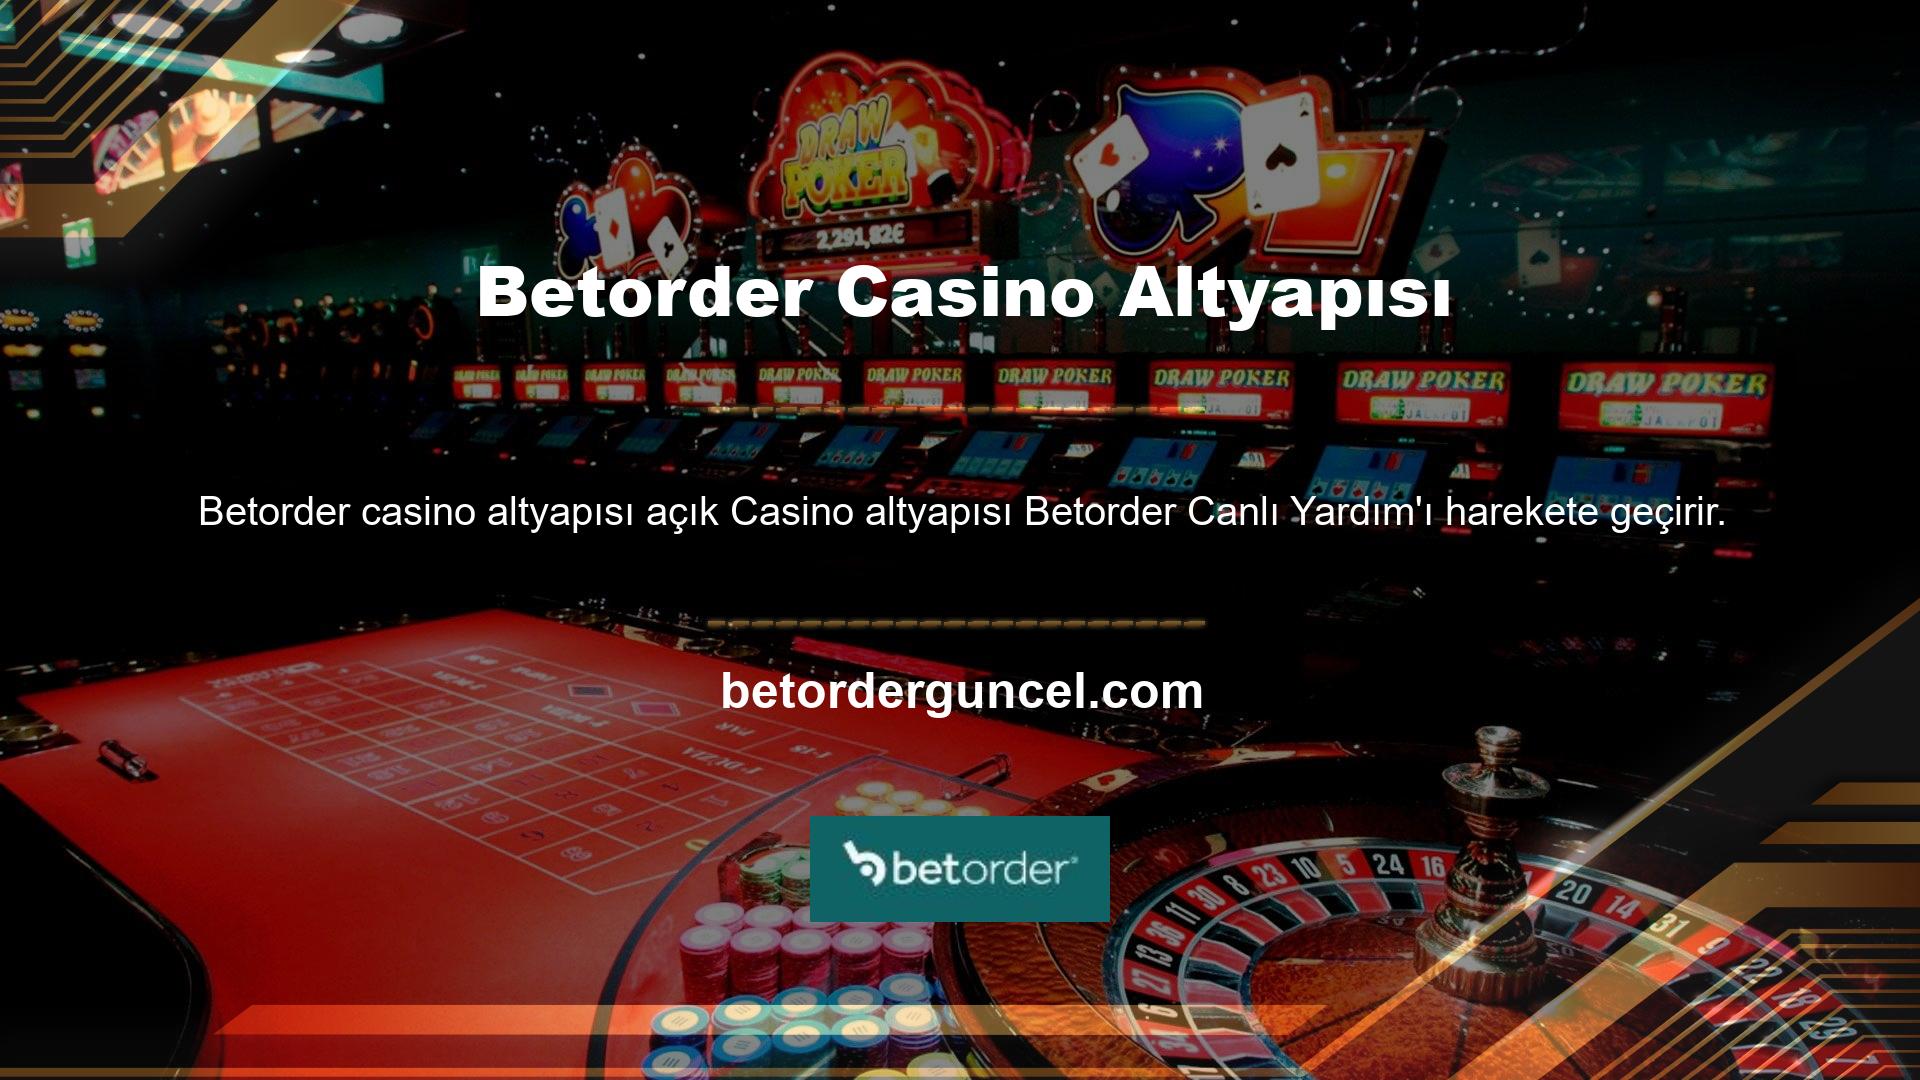 Betorder geniş bir casino oyunu yelpazesi sunar